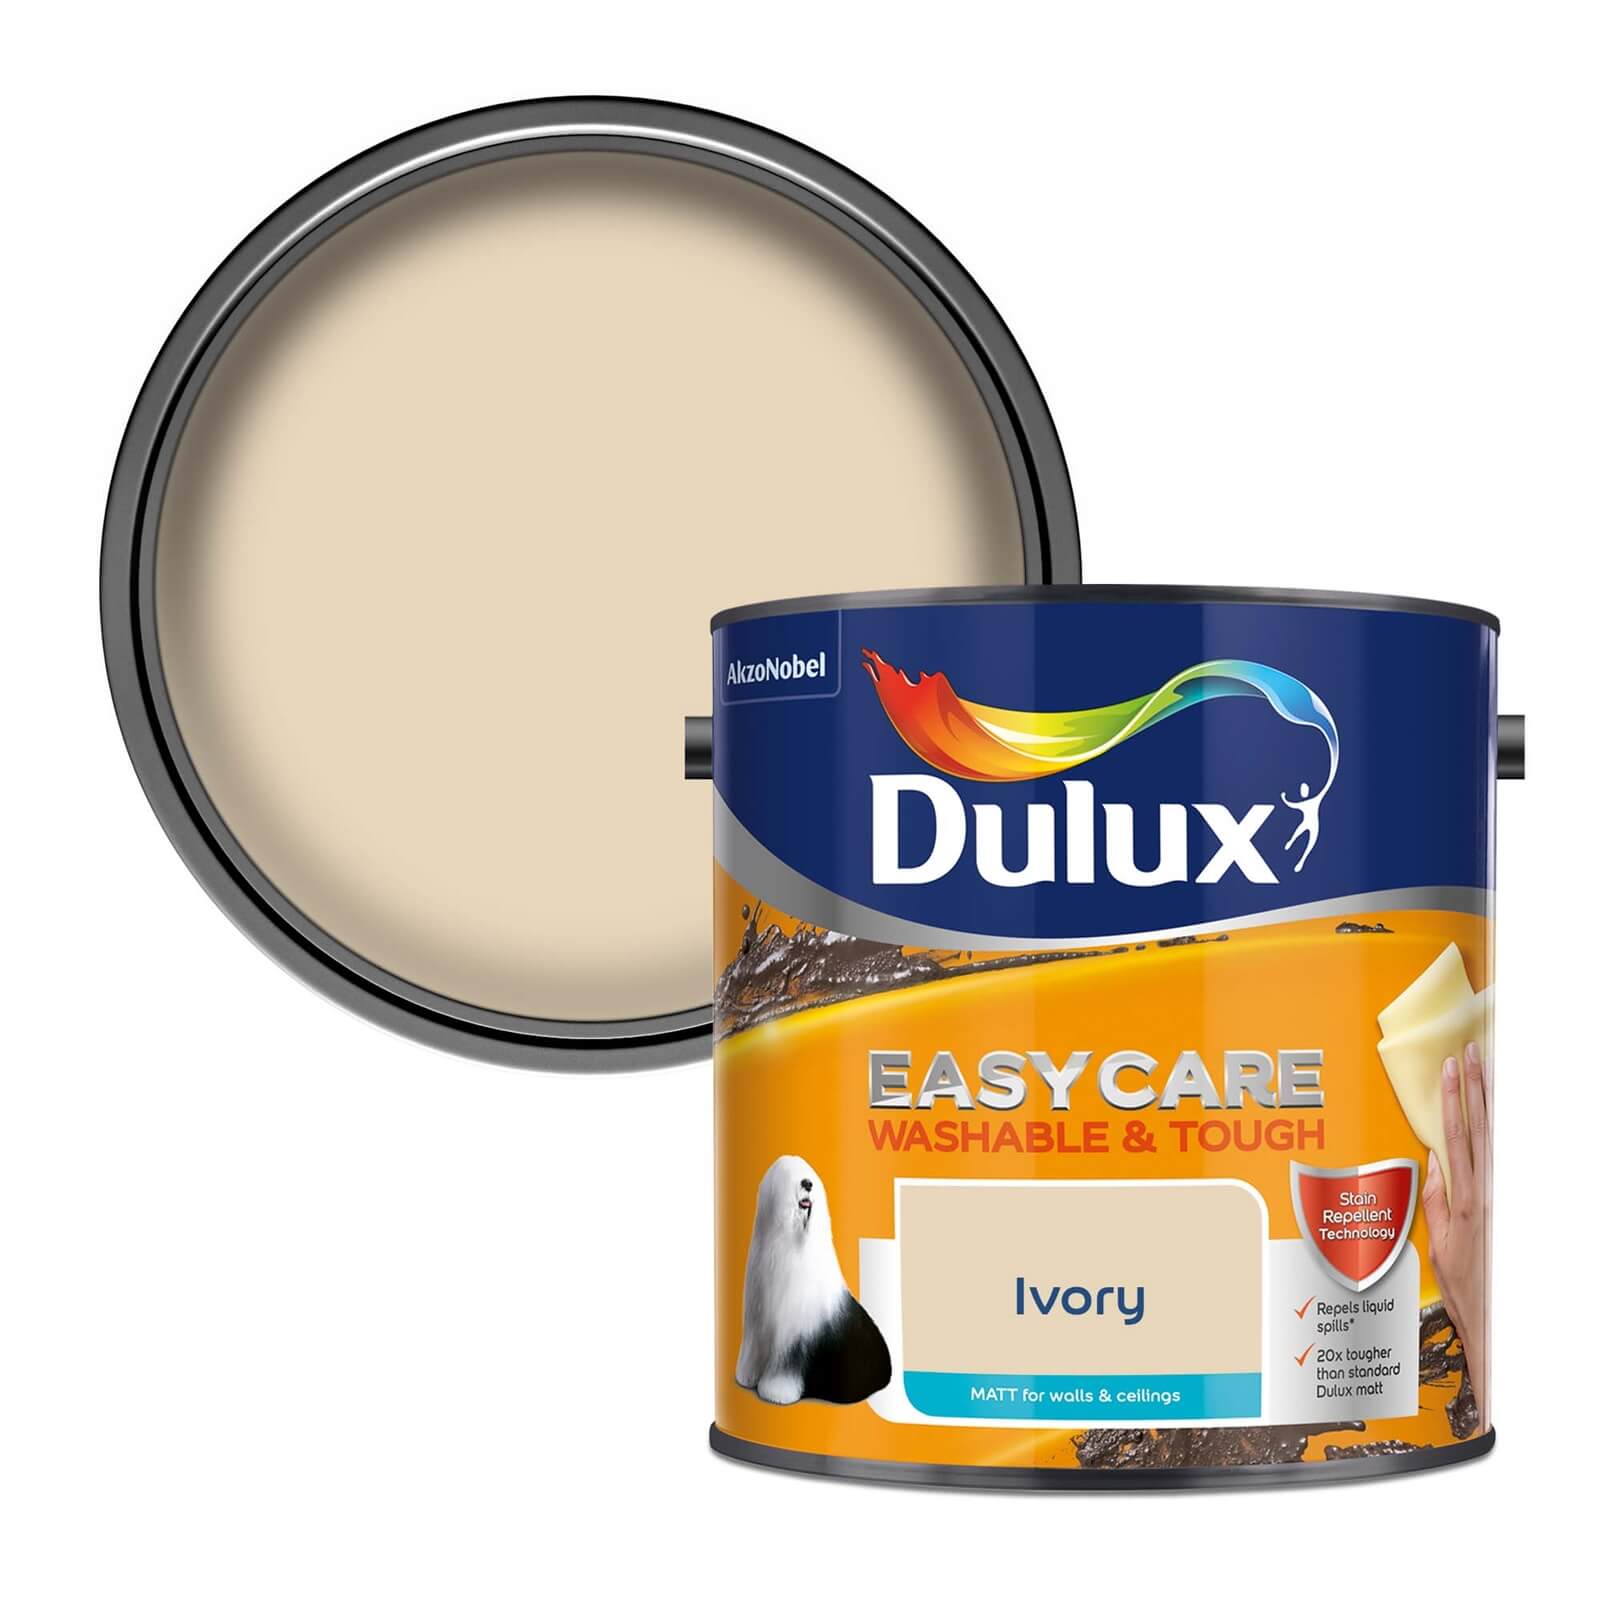 Dulux Easycare Washable & Tough Matt Paint Ivory - 2.5L